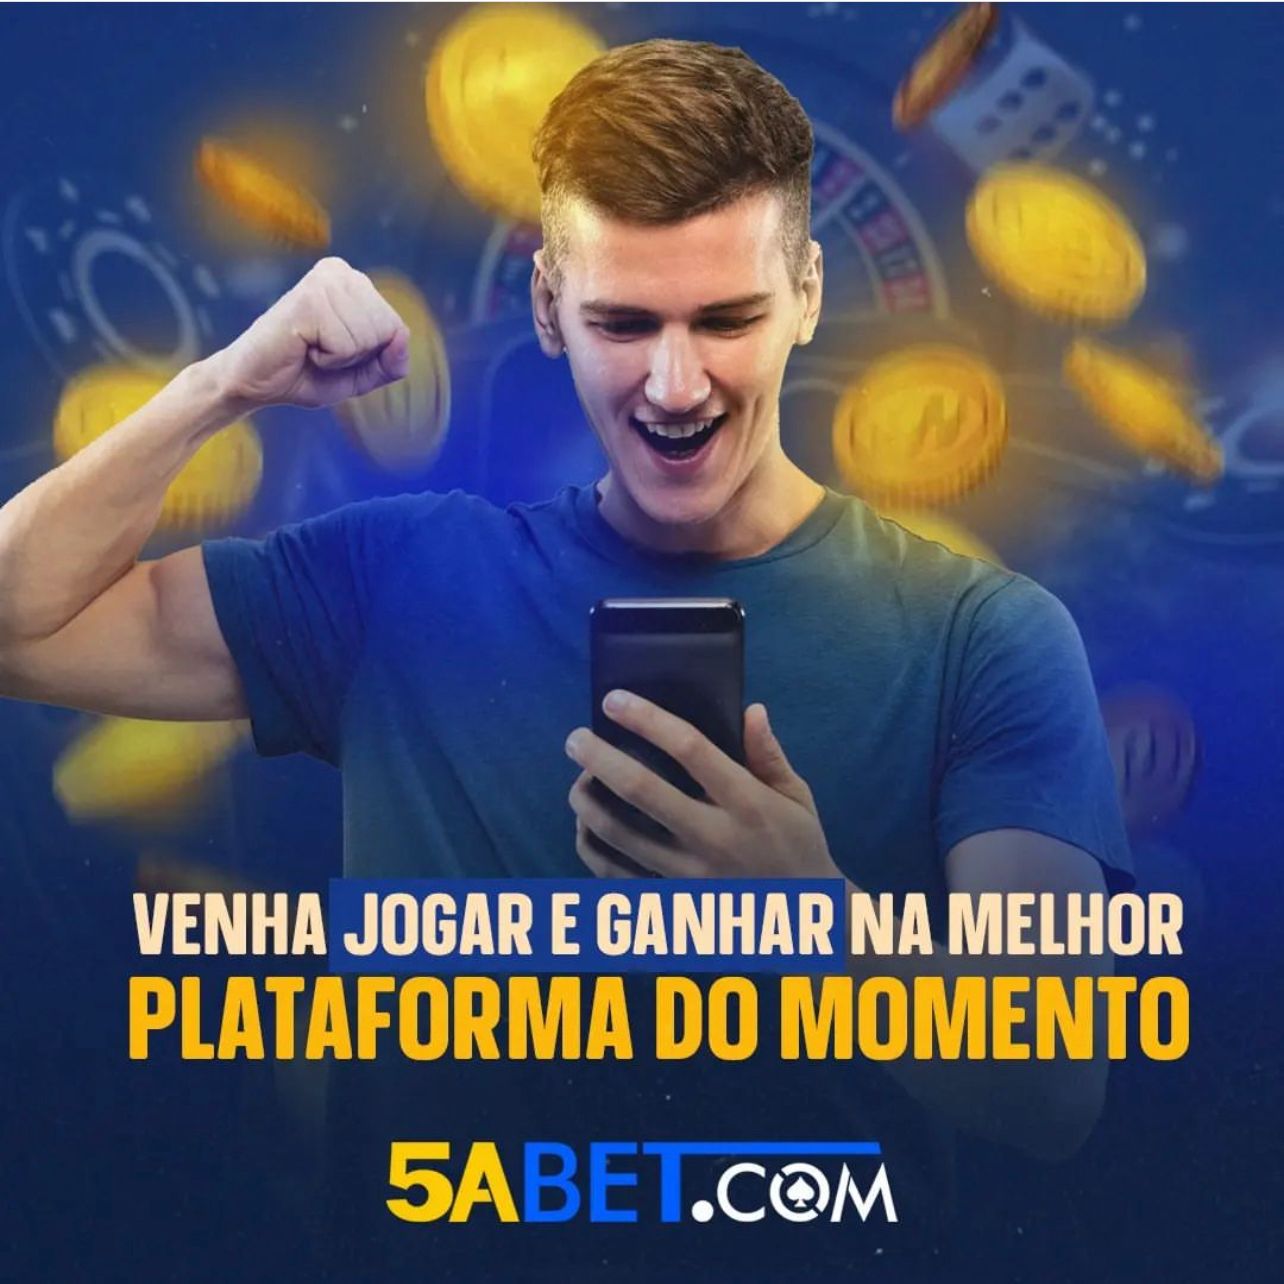 5ABET - O Melhor Cassino do Brasil, Plataforma Segura e Legal